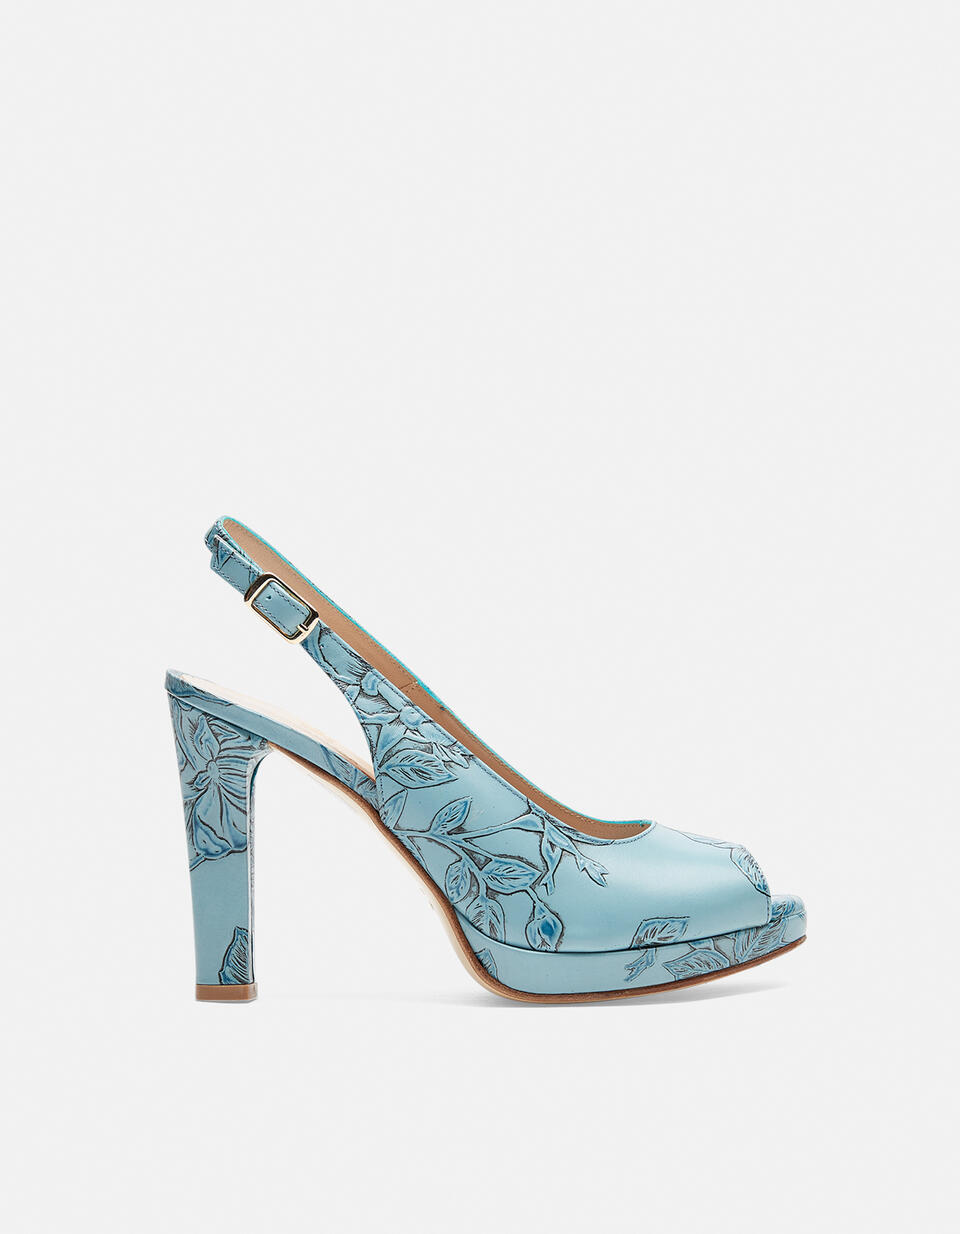 Monroe Mimi sandal - Women Shoes | Shoes Mimì CELESTE - Women Shoes | ShoesCuoieria Fiorentina